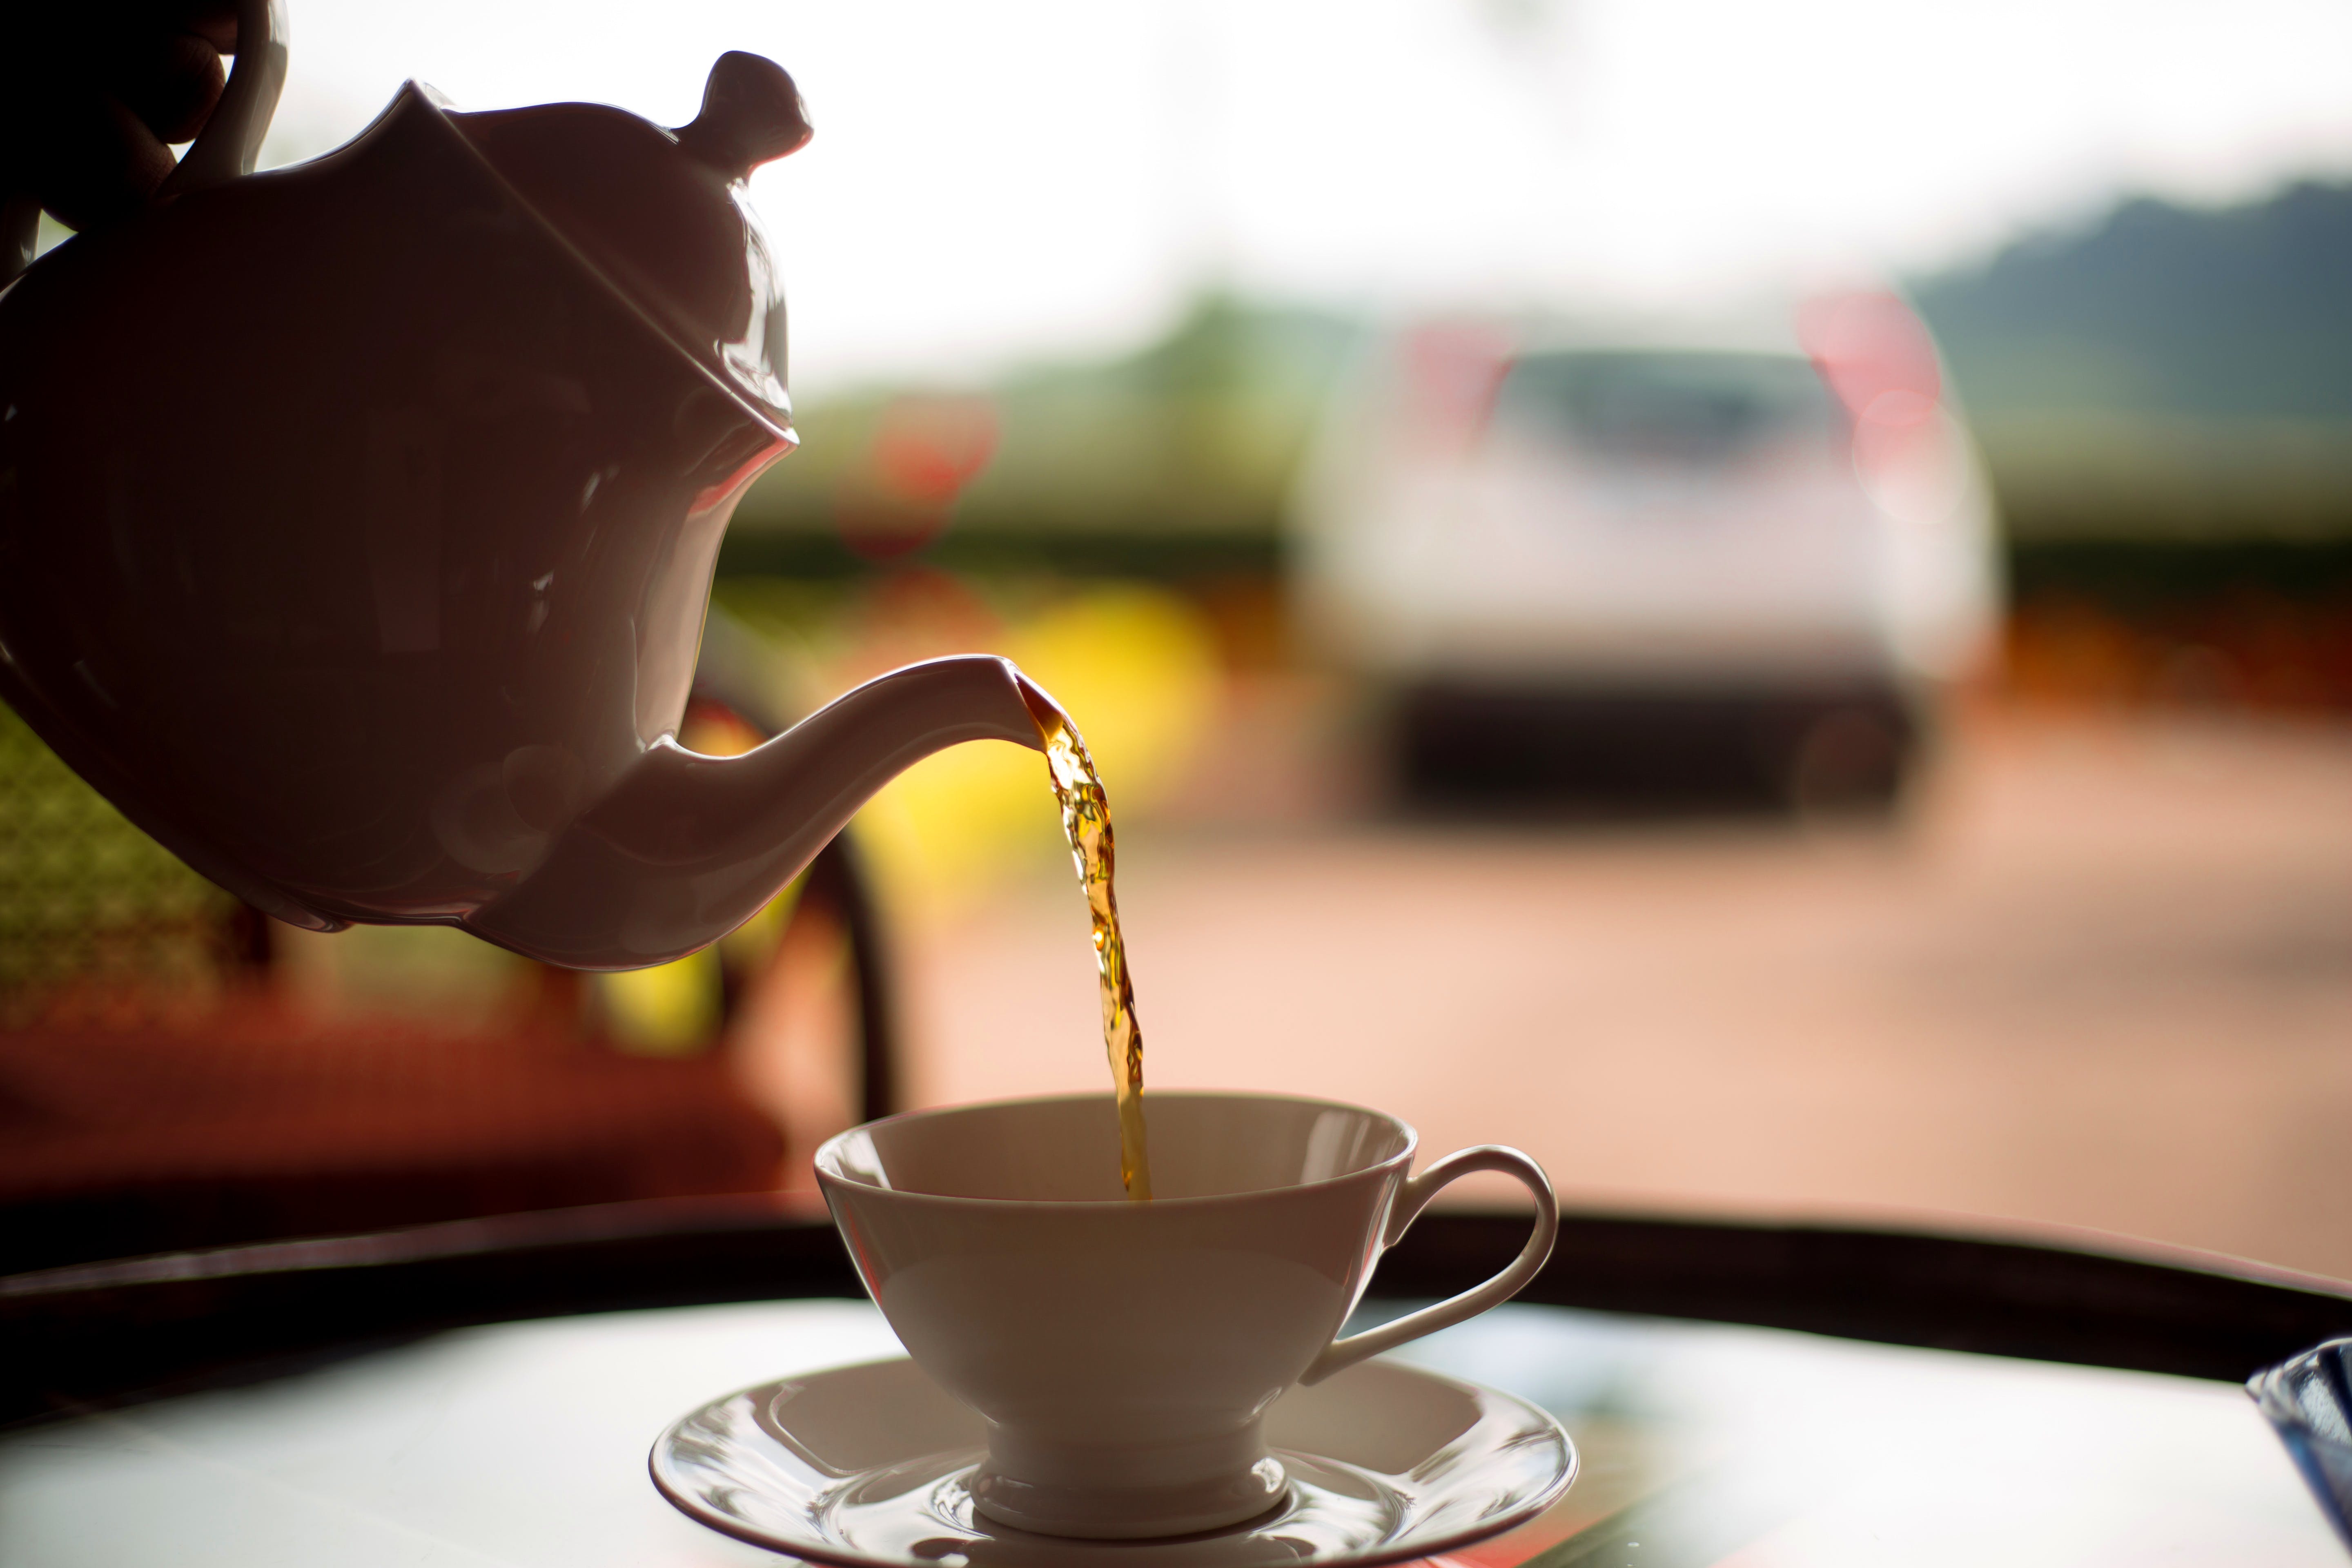 Teapot,Cup,Cup,Coffee cup,Tableware,Drink,Coffee,Drinkware,Tea,Serveware